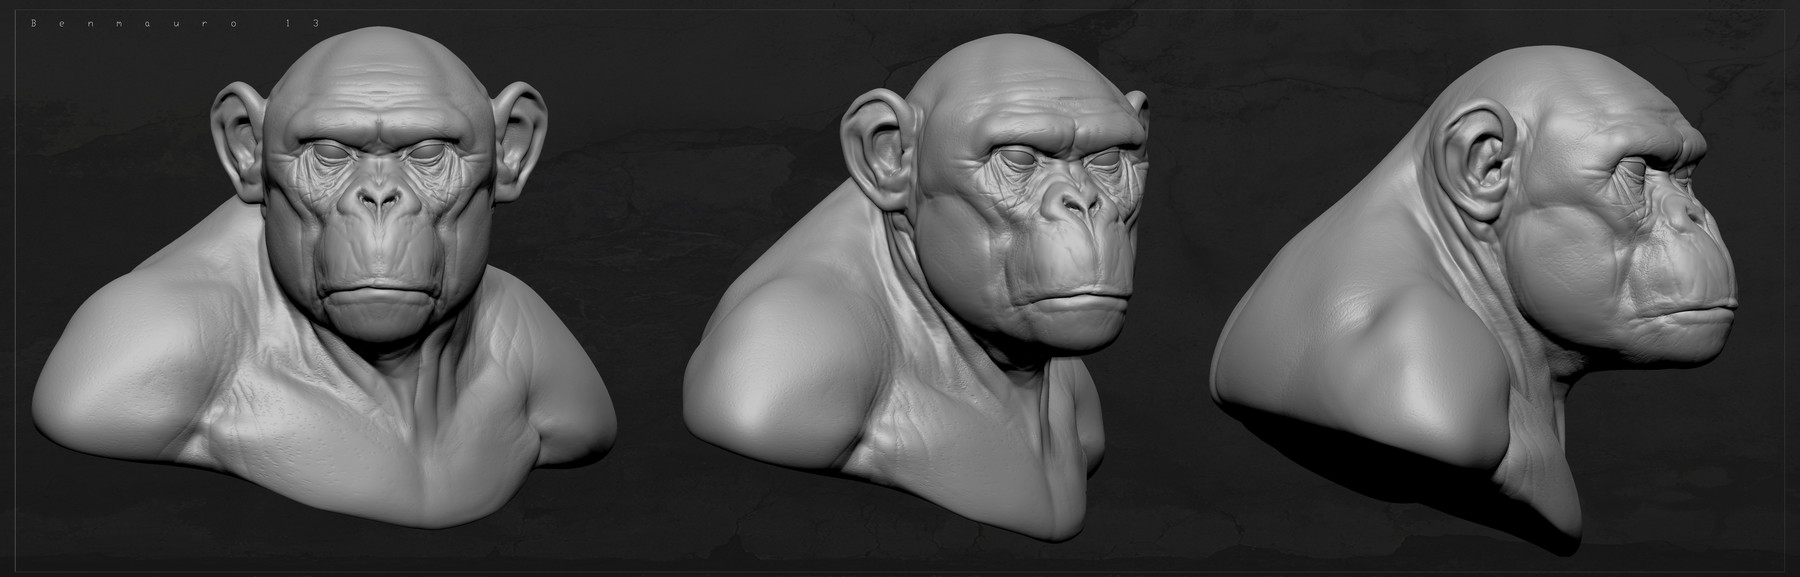 Chimp sculpt bm